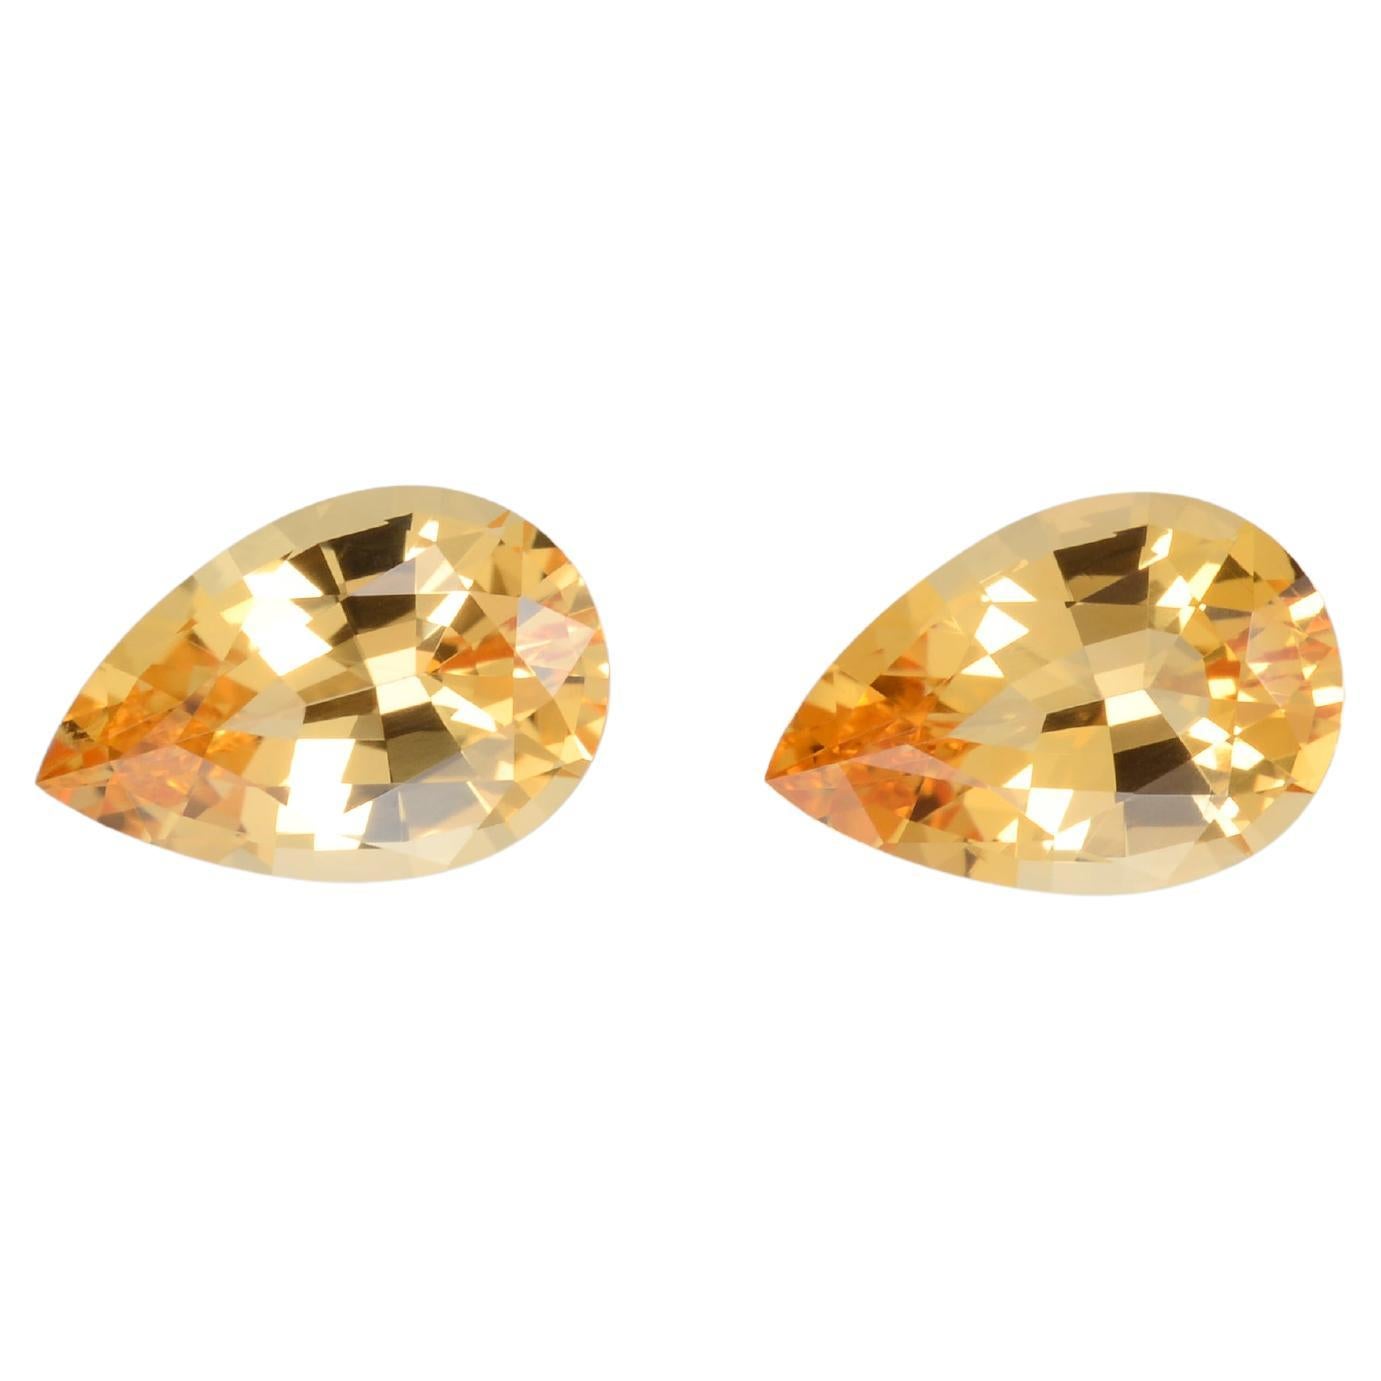 Imperial Topaz Earrings Loose Gemstones Unmounted 2.53 Carat Yellow Pair